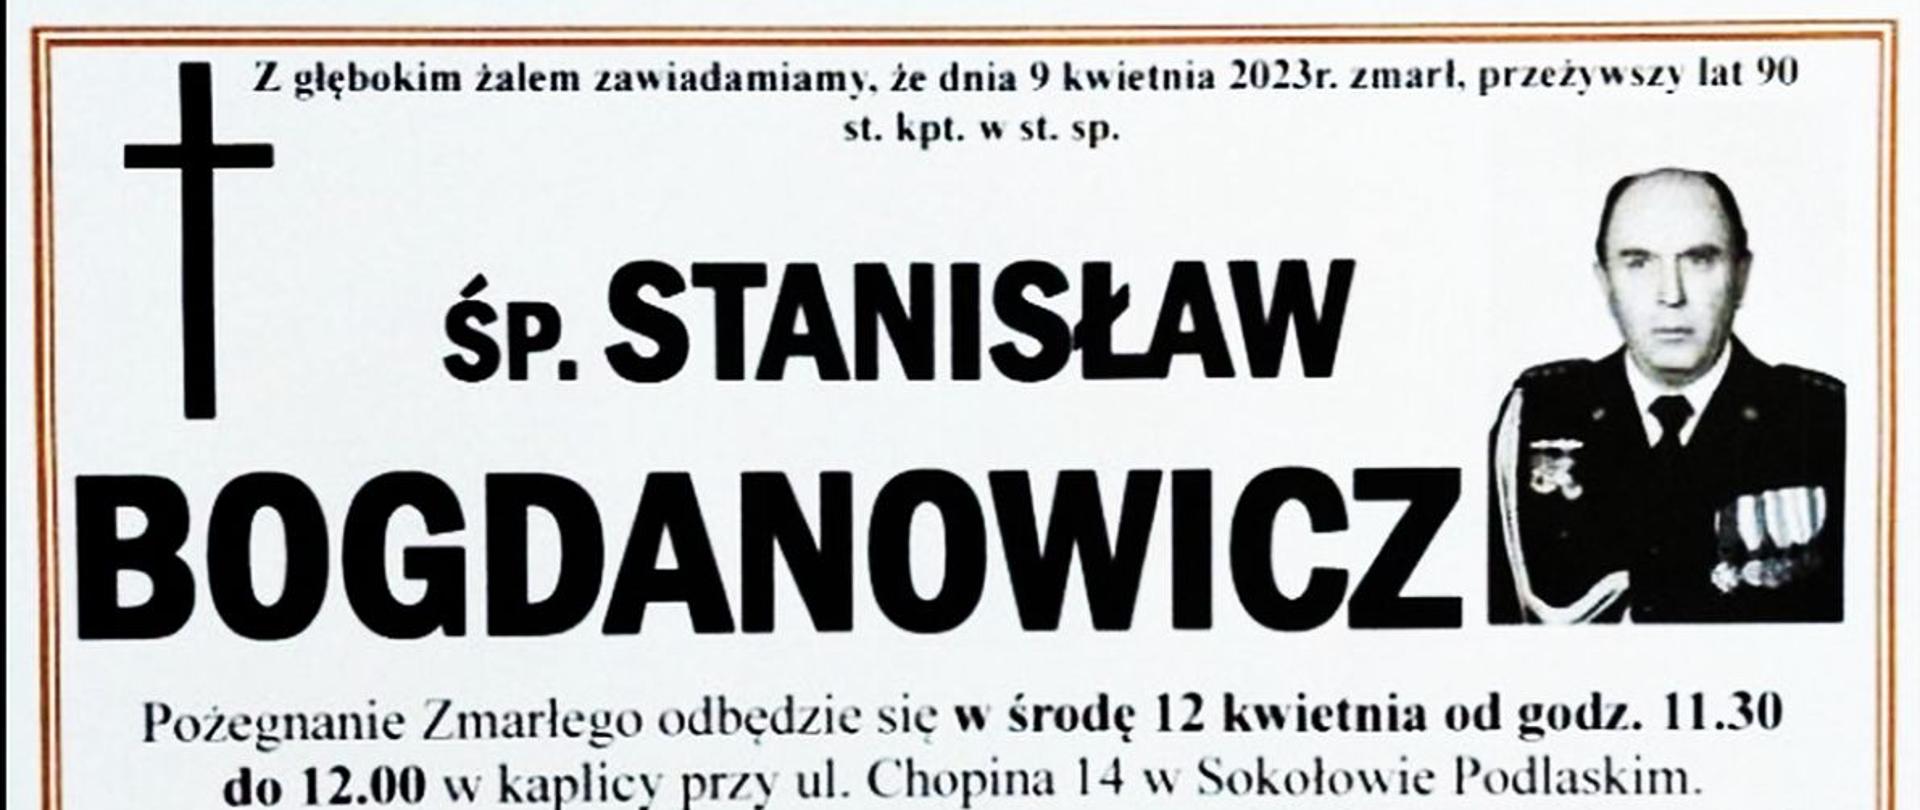 nekrolog śp. Stanisław Bogdanowicz